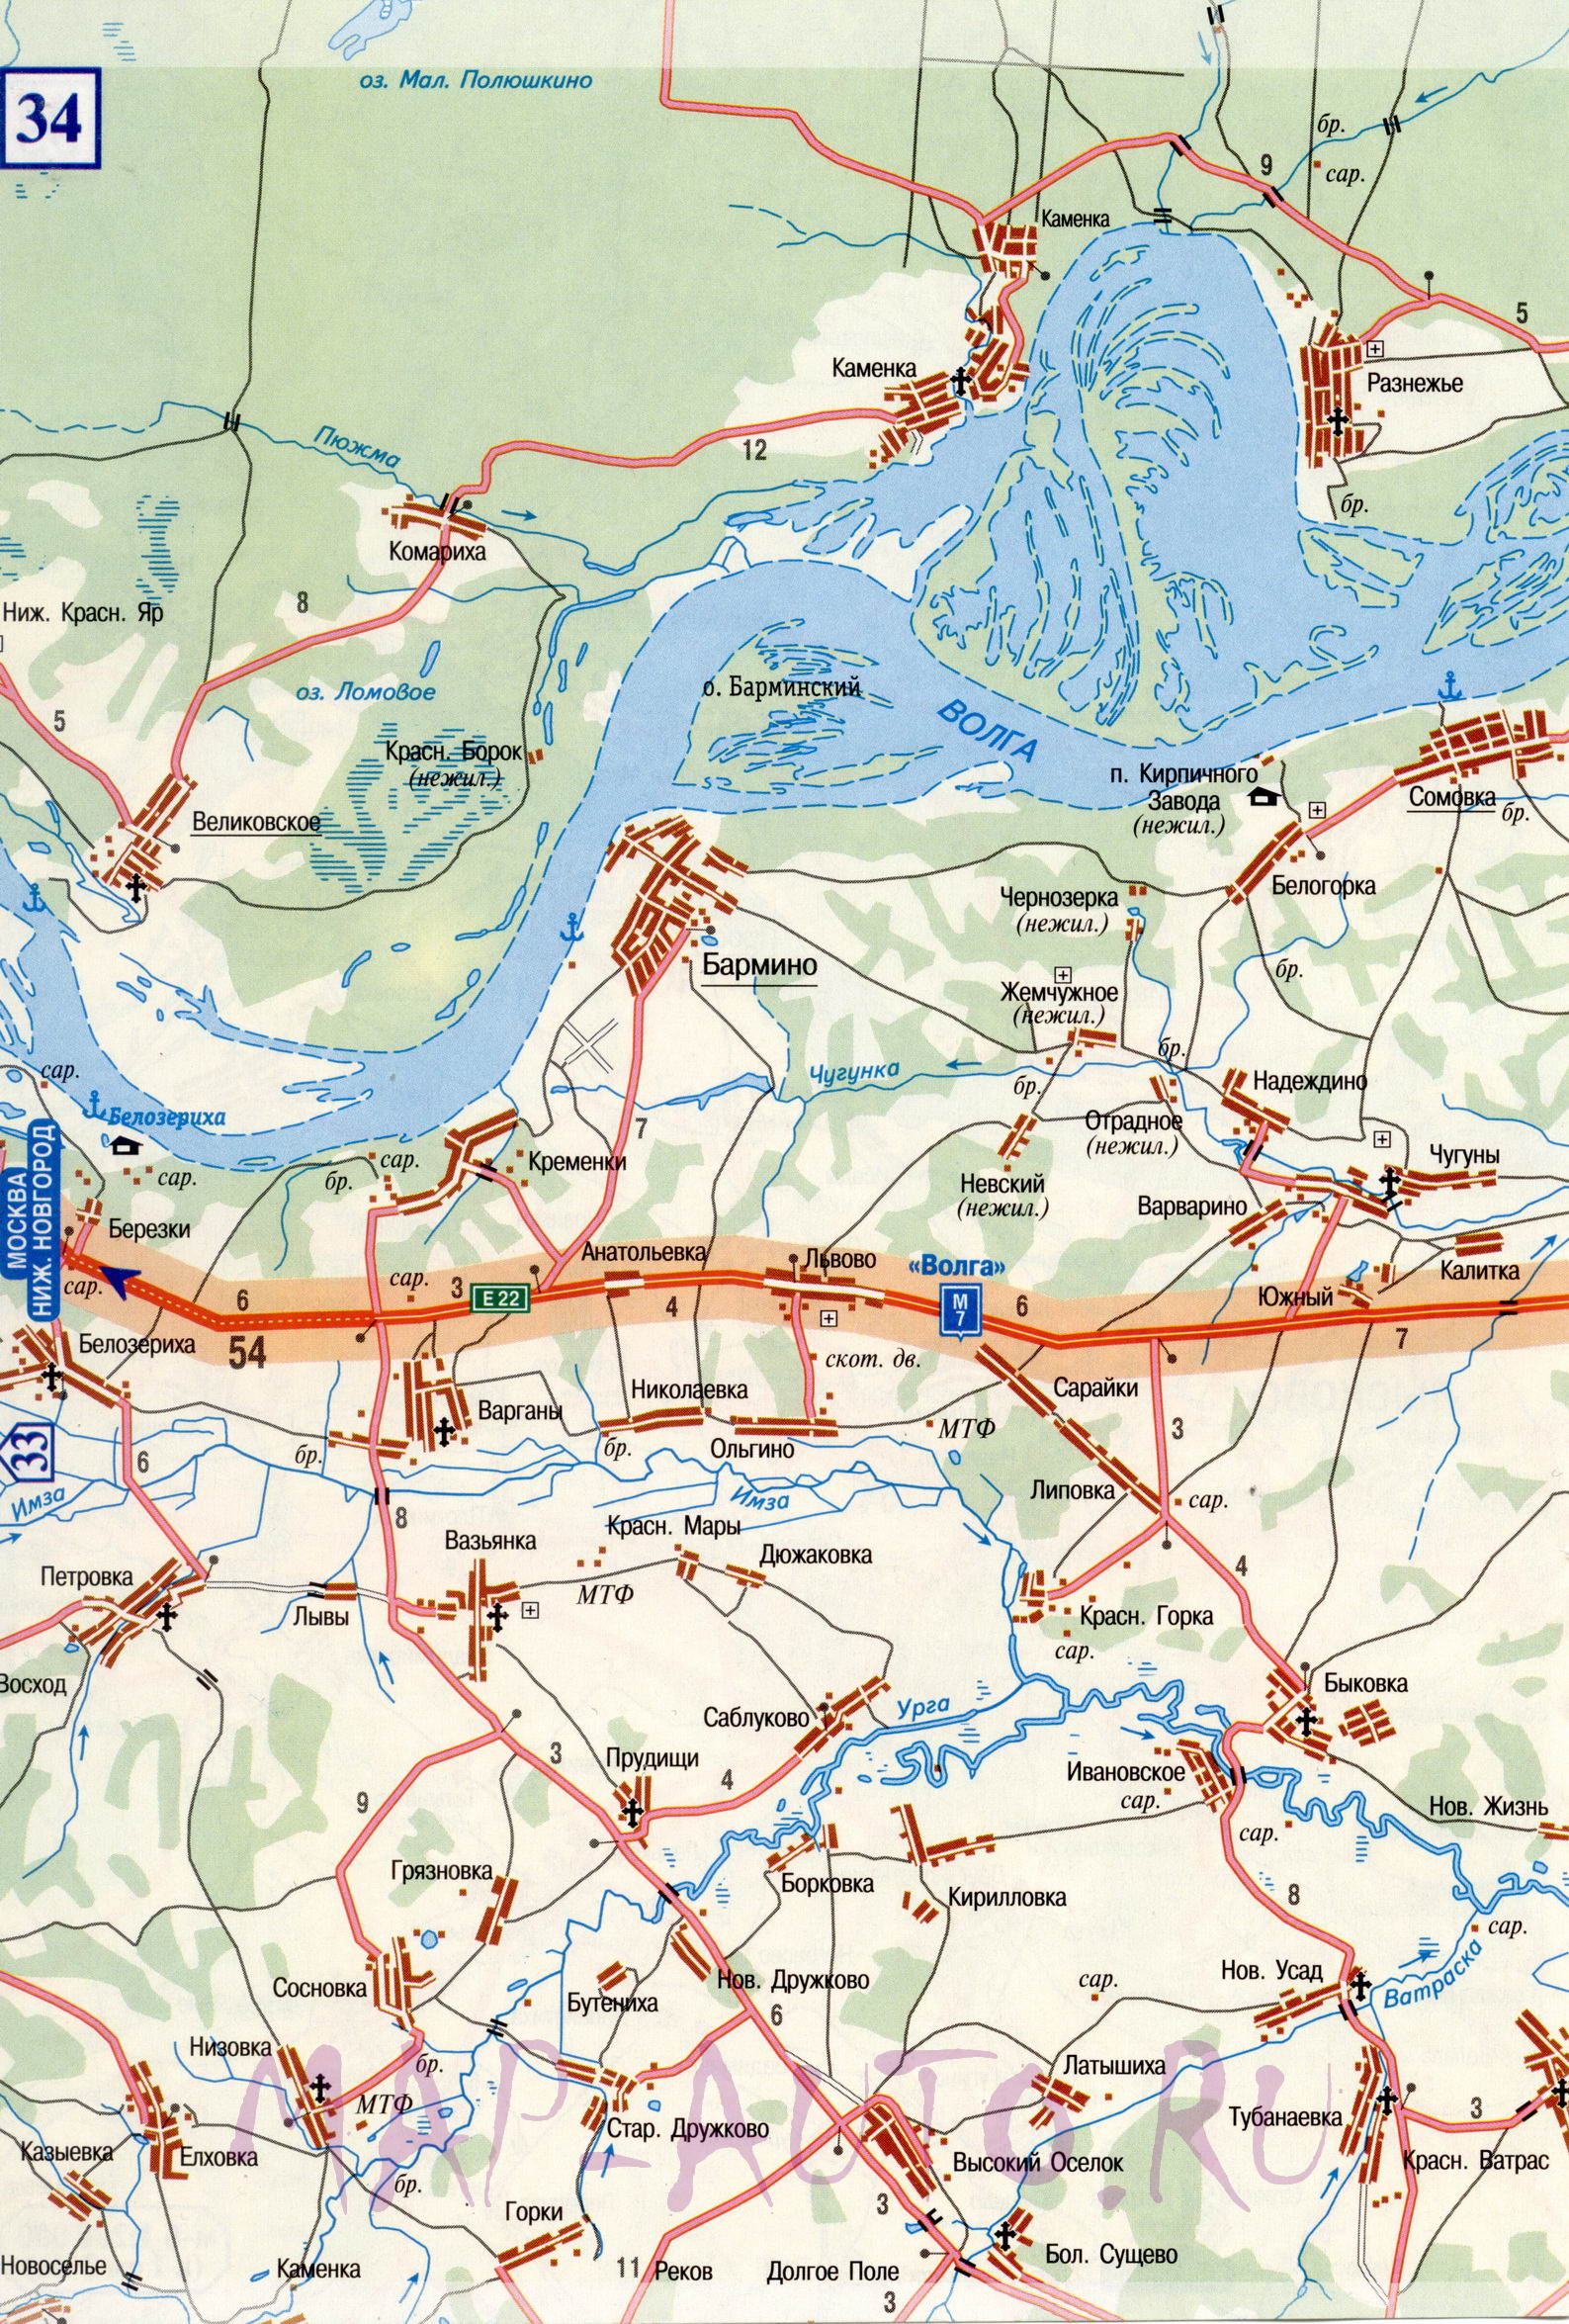 Карта дороги Нижний Новгород - Чебоксары. Подробная карта авто дороги Нижний Новгород - Чебоксары (отрезок трассы М7 ВОЛГА), D0 - 